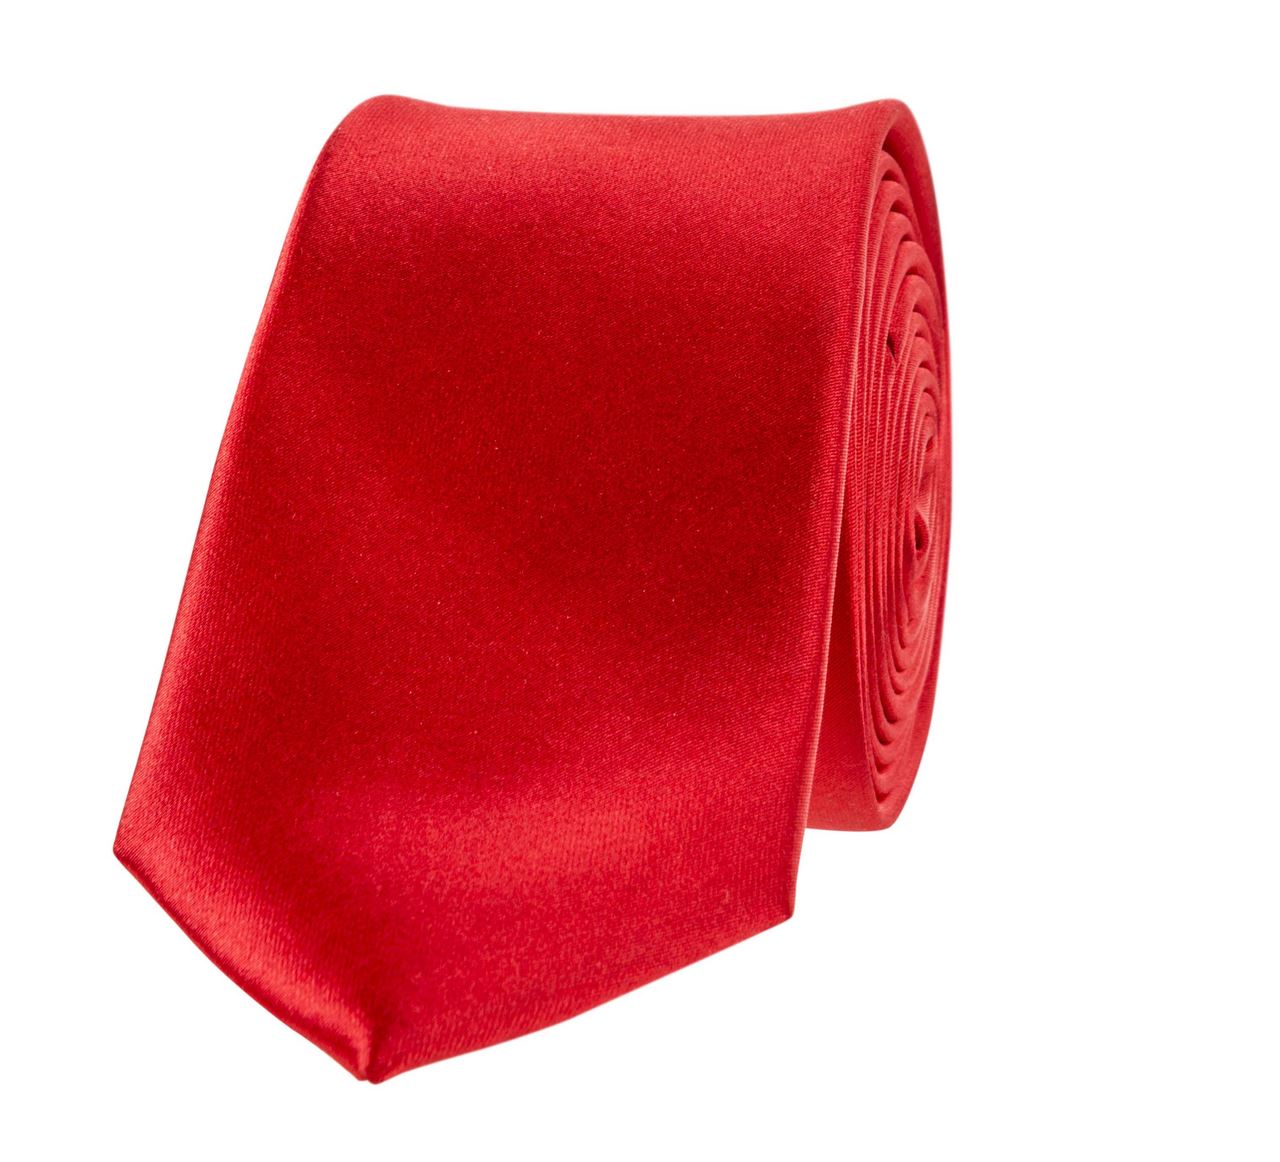 Cravate de service rouge (vendu par 5) - Molinel - 2919999116